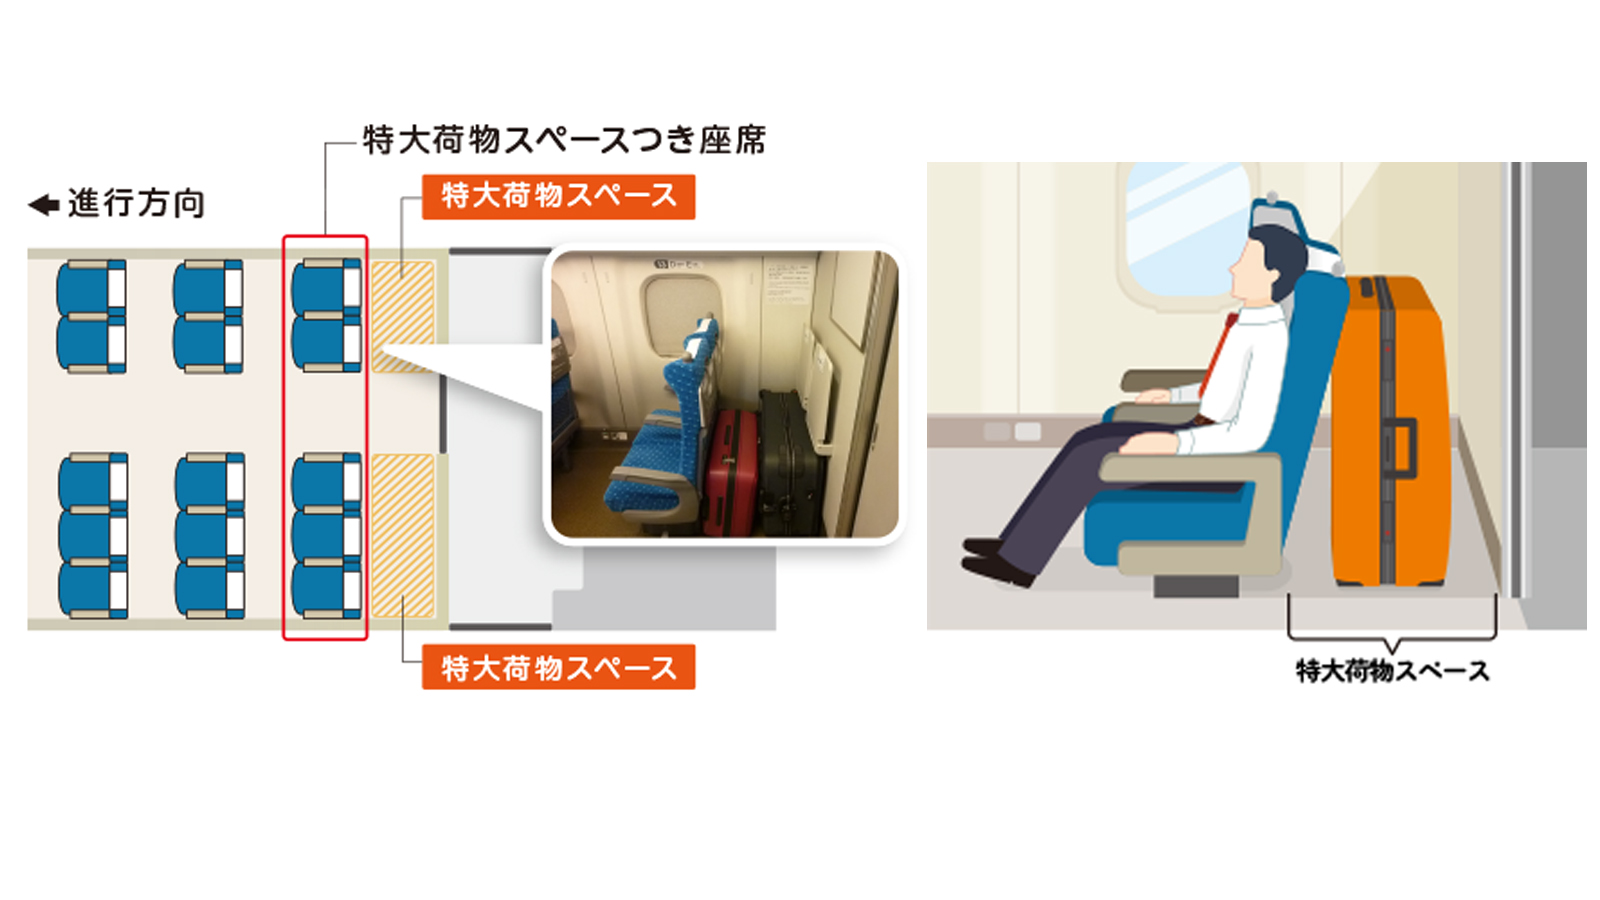 Die letzten 5 Sitze werden künftig einzig für Passagier mit grossen Koffern reserviert.